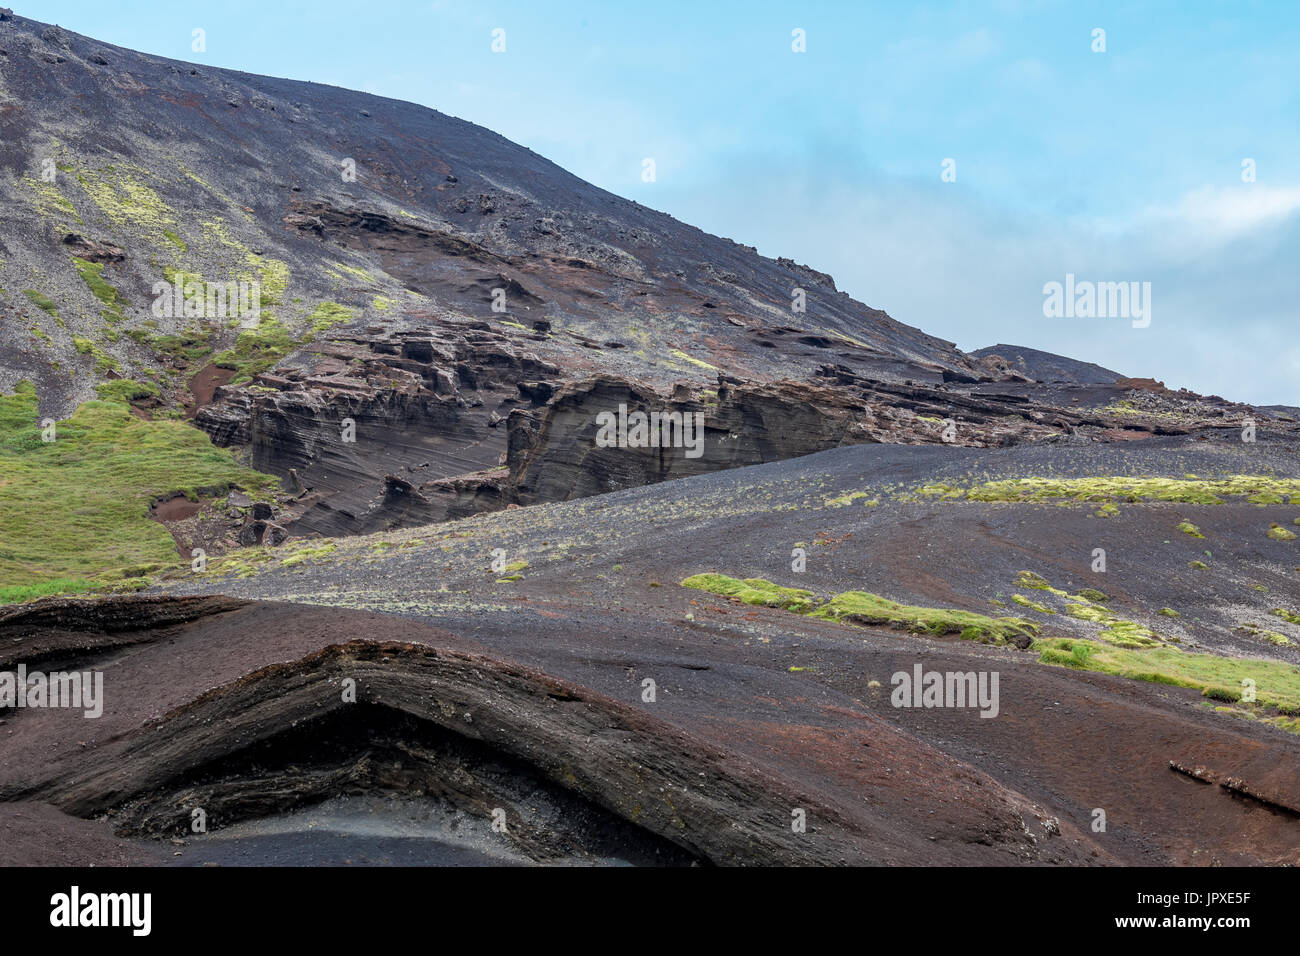 Nera vulcanica gli strati di roccia e scogliere a più livelli Foto Stock